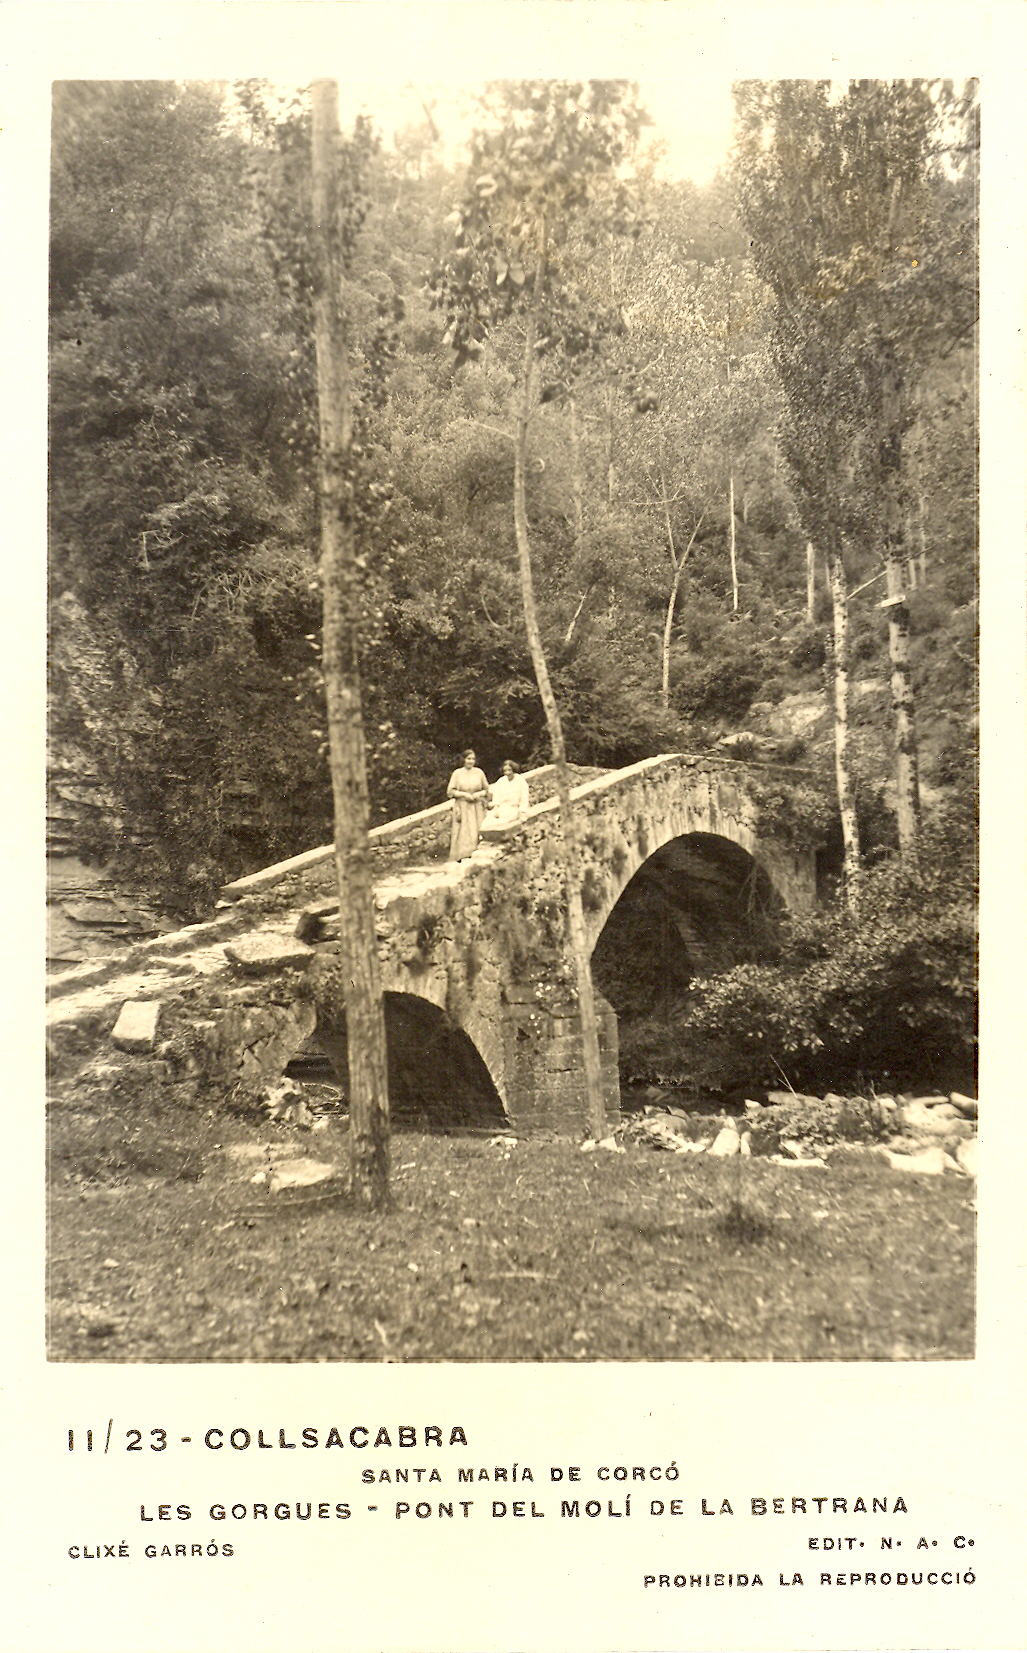 Pont del molí de la Bertrana